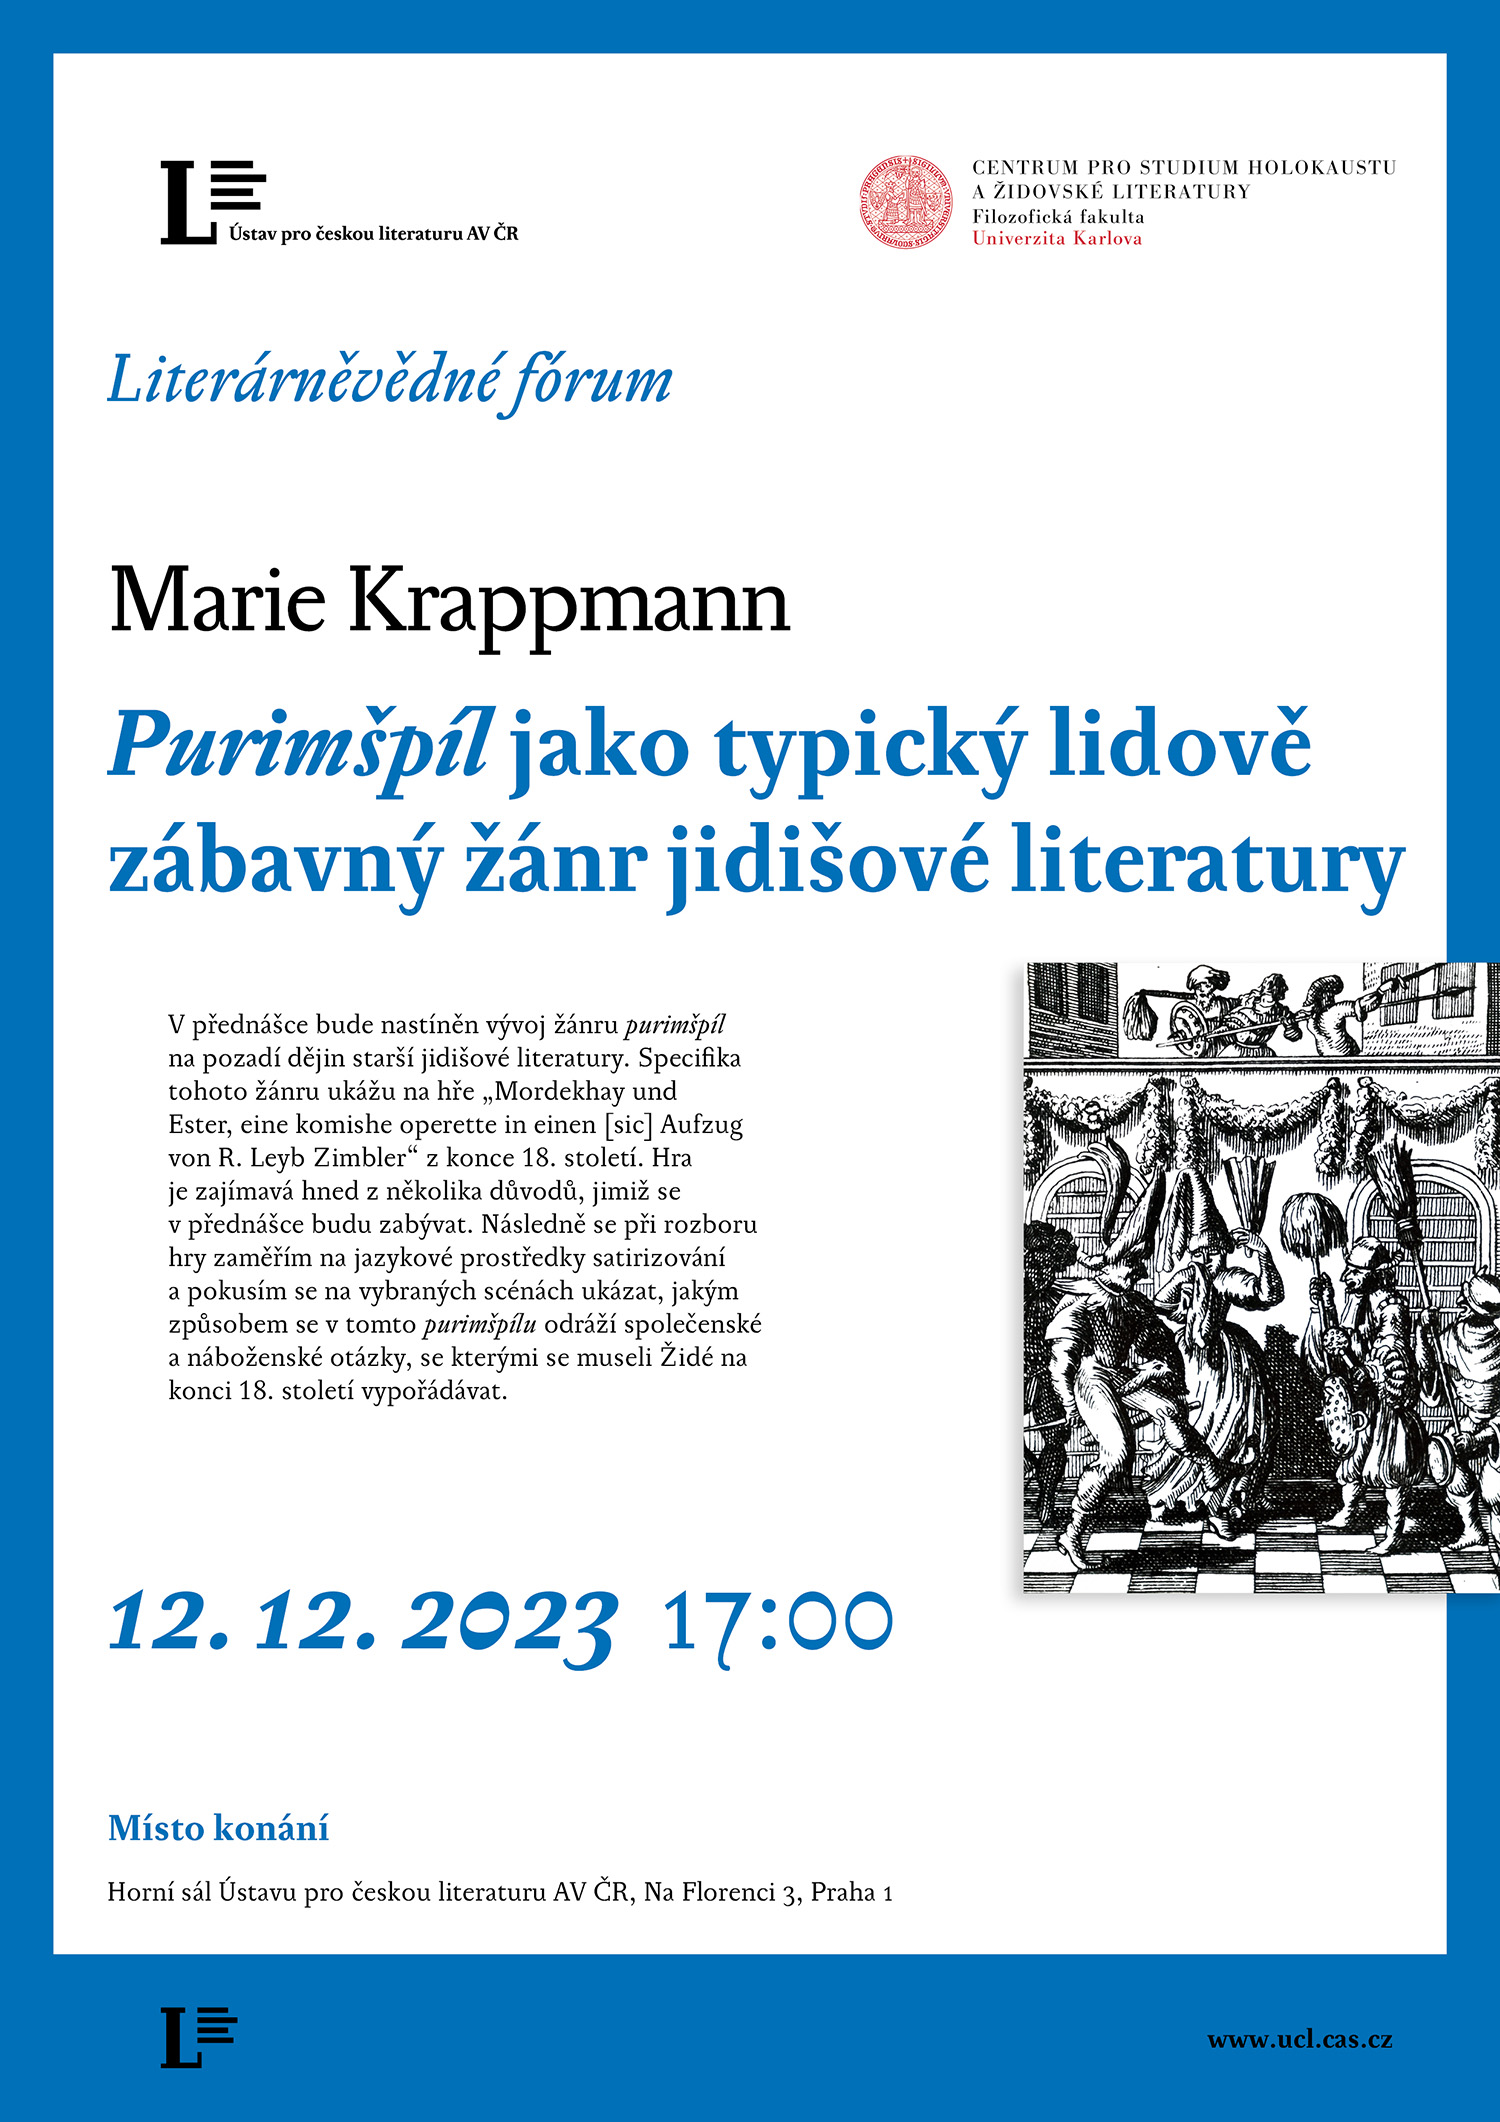 Pozvánka na přednášku Marie Krappmann (12. 12. 2023)